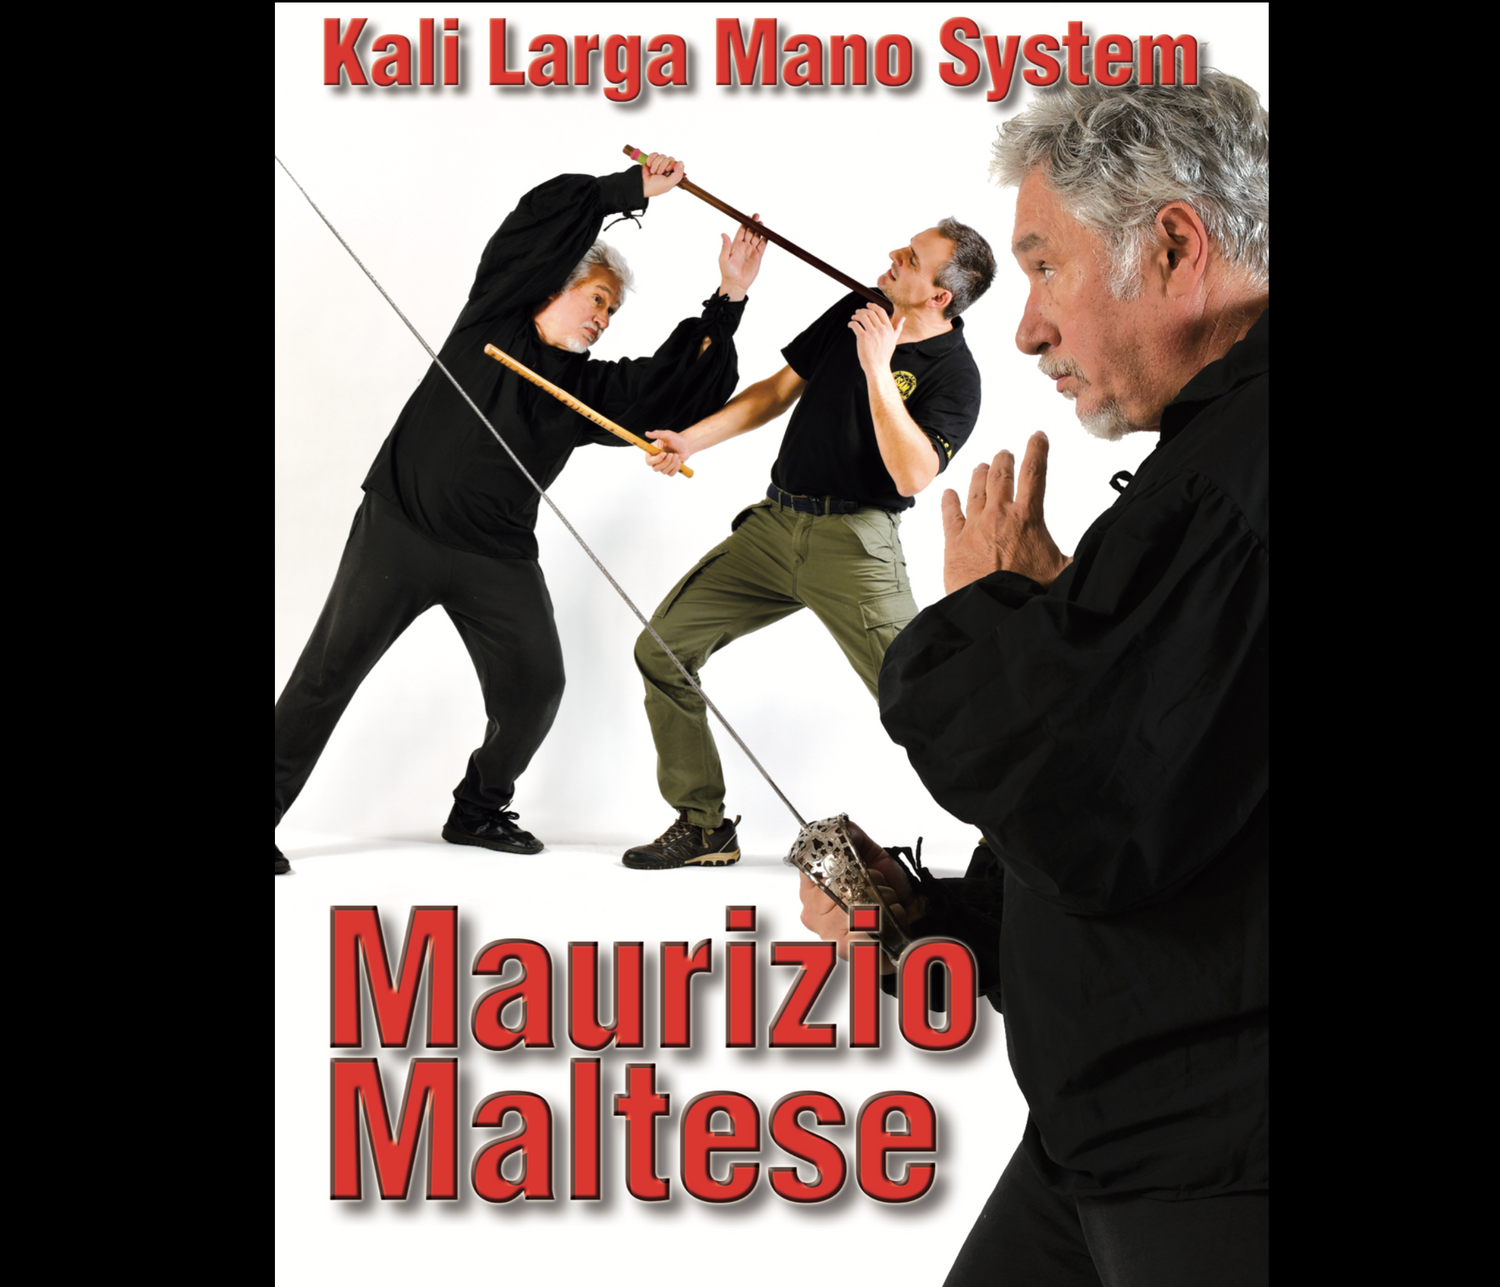 Sistema Kali Larga Mano de Maruicio Maltese (Bajo Demanda)